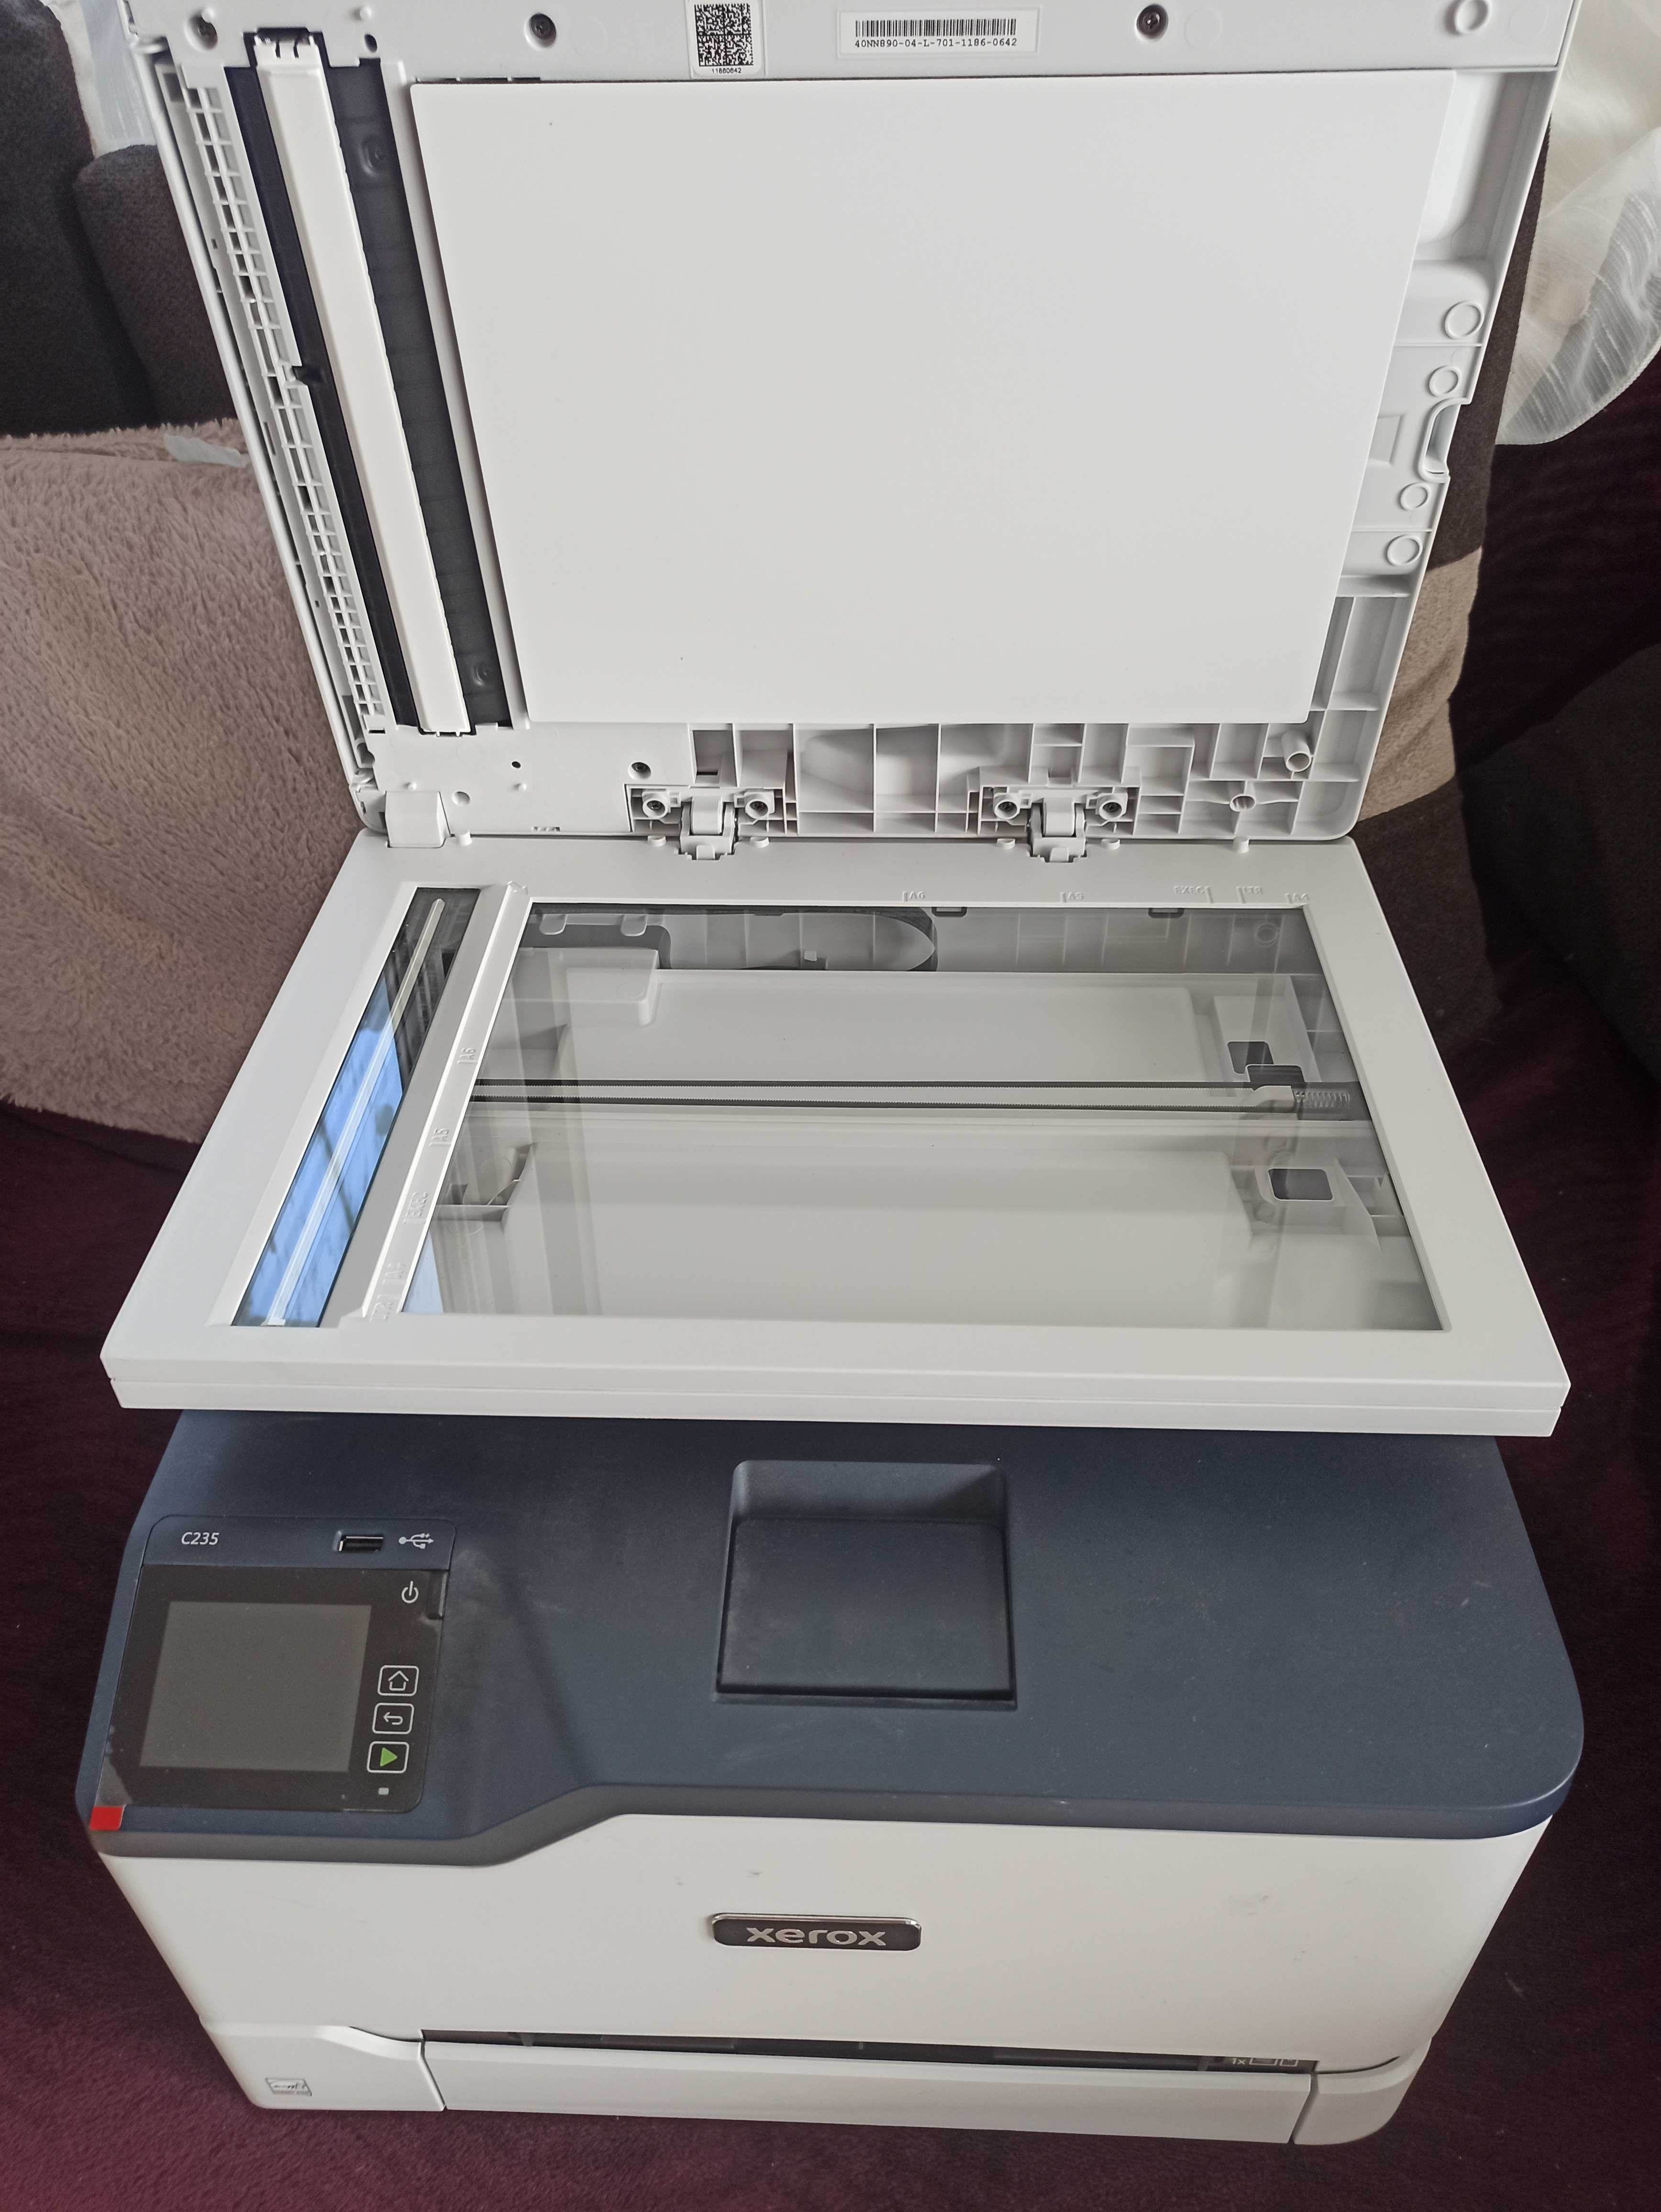 Imprimanta multifunctionala Xerox C235